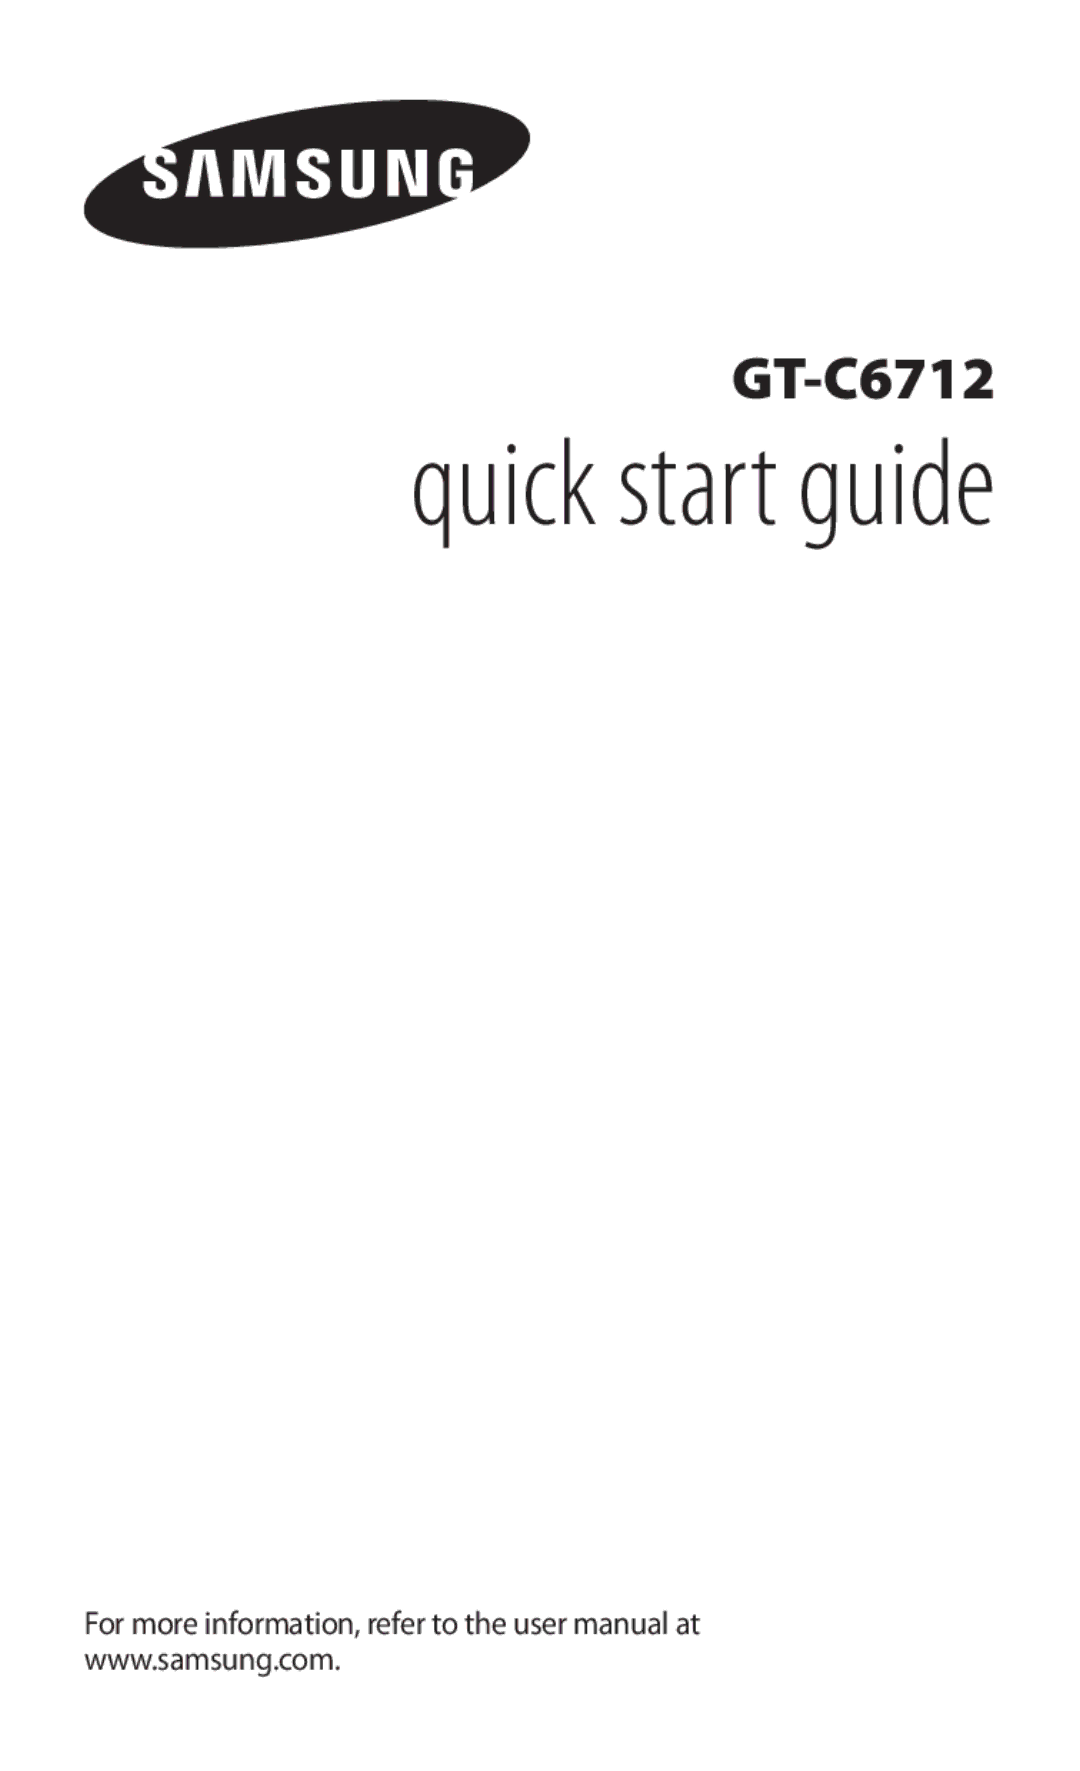 Samsung GT-C6712LKAXEZ, GT-C6712RWAXSK, GT-C6712RWAXEZ, GT-C6712LKAXSK, GT-C6712RWACYO manual Quick start guide 